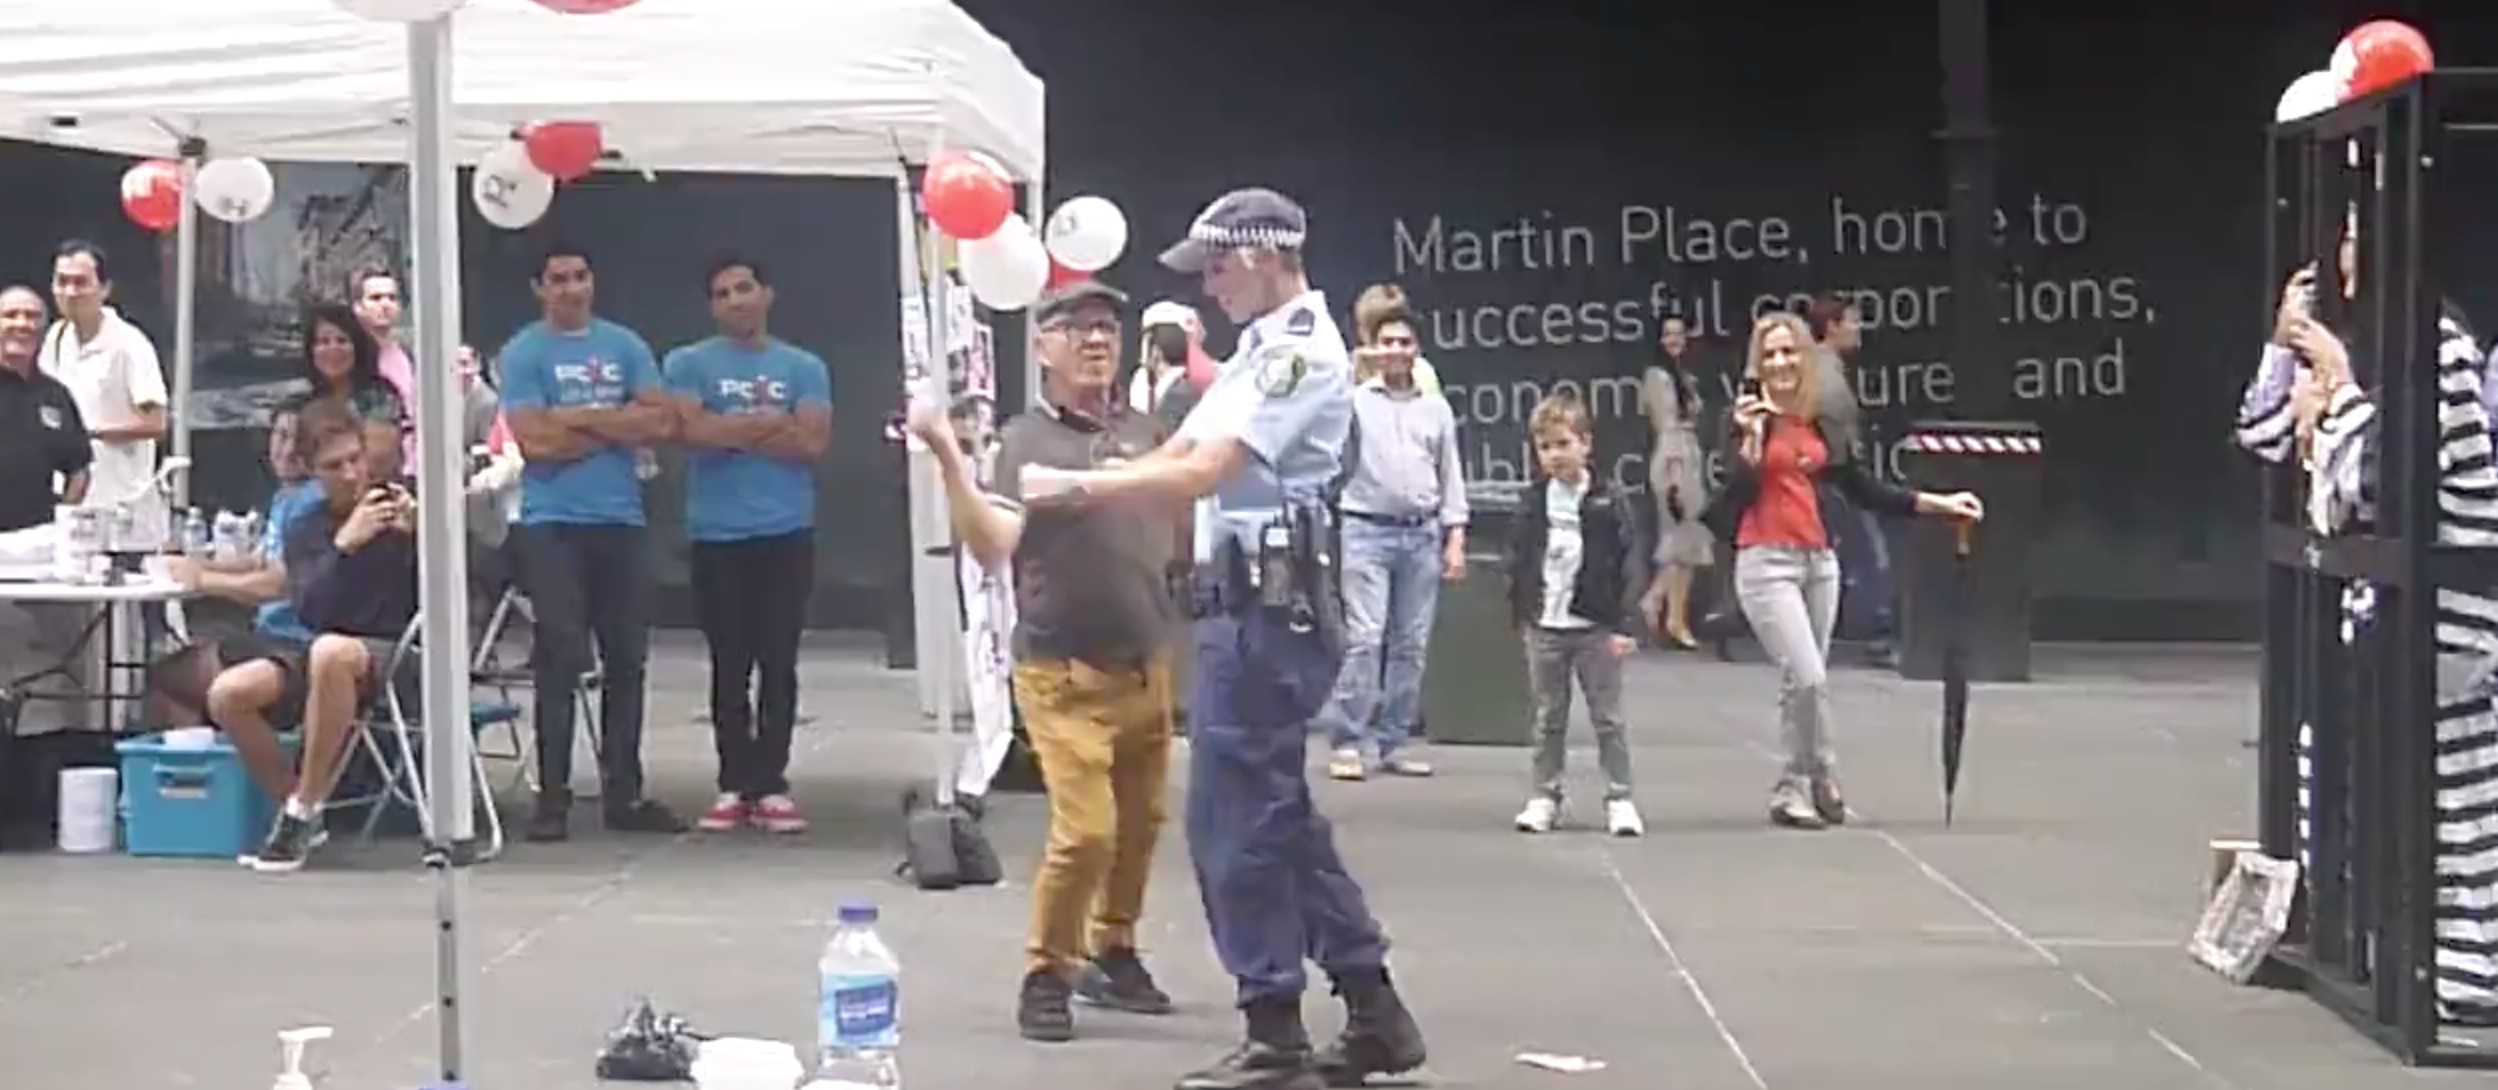 Australie il donne envie de danser a une policiere